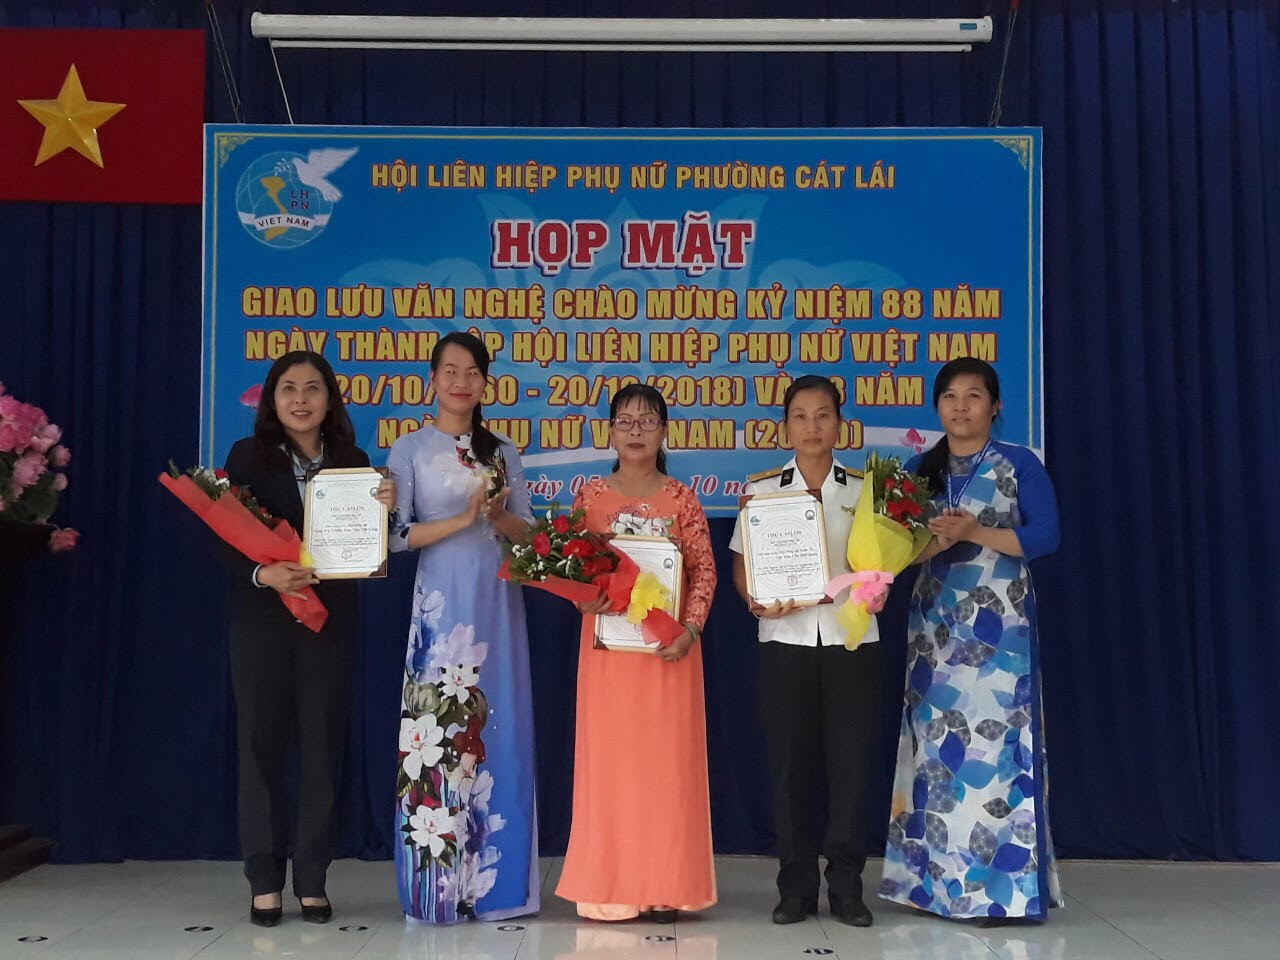 Chị Nguyễn Thị Giao Chi - Chủ tịch Hội LHPN phường trao thư khen cho các đơn vị tài trợ